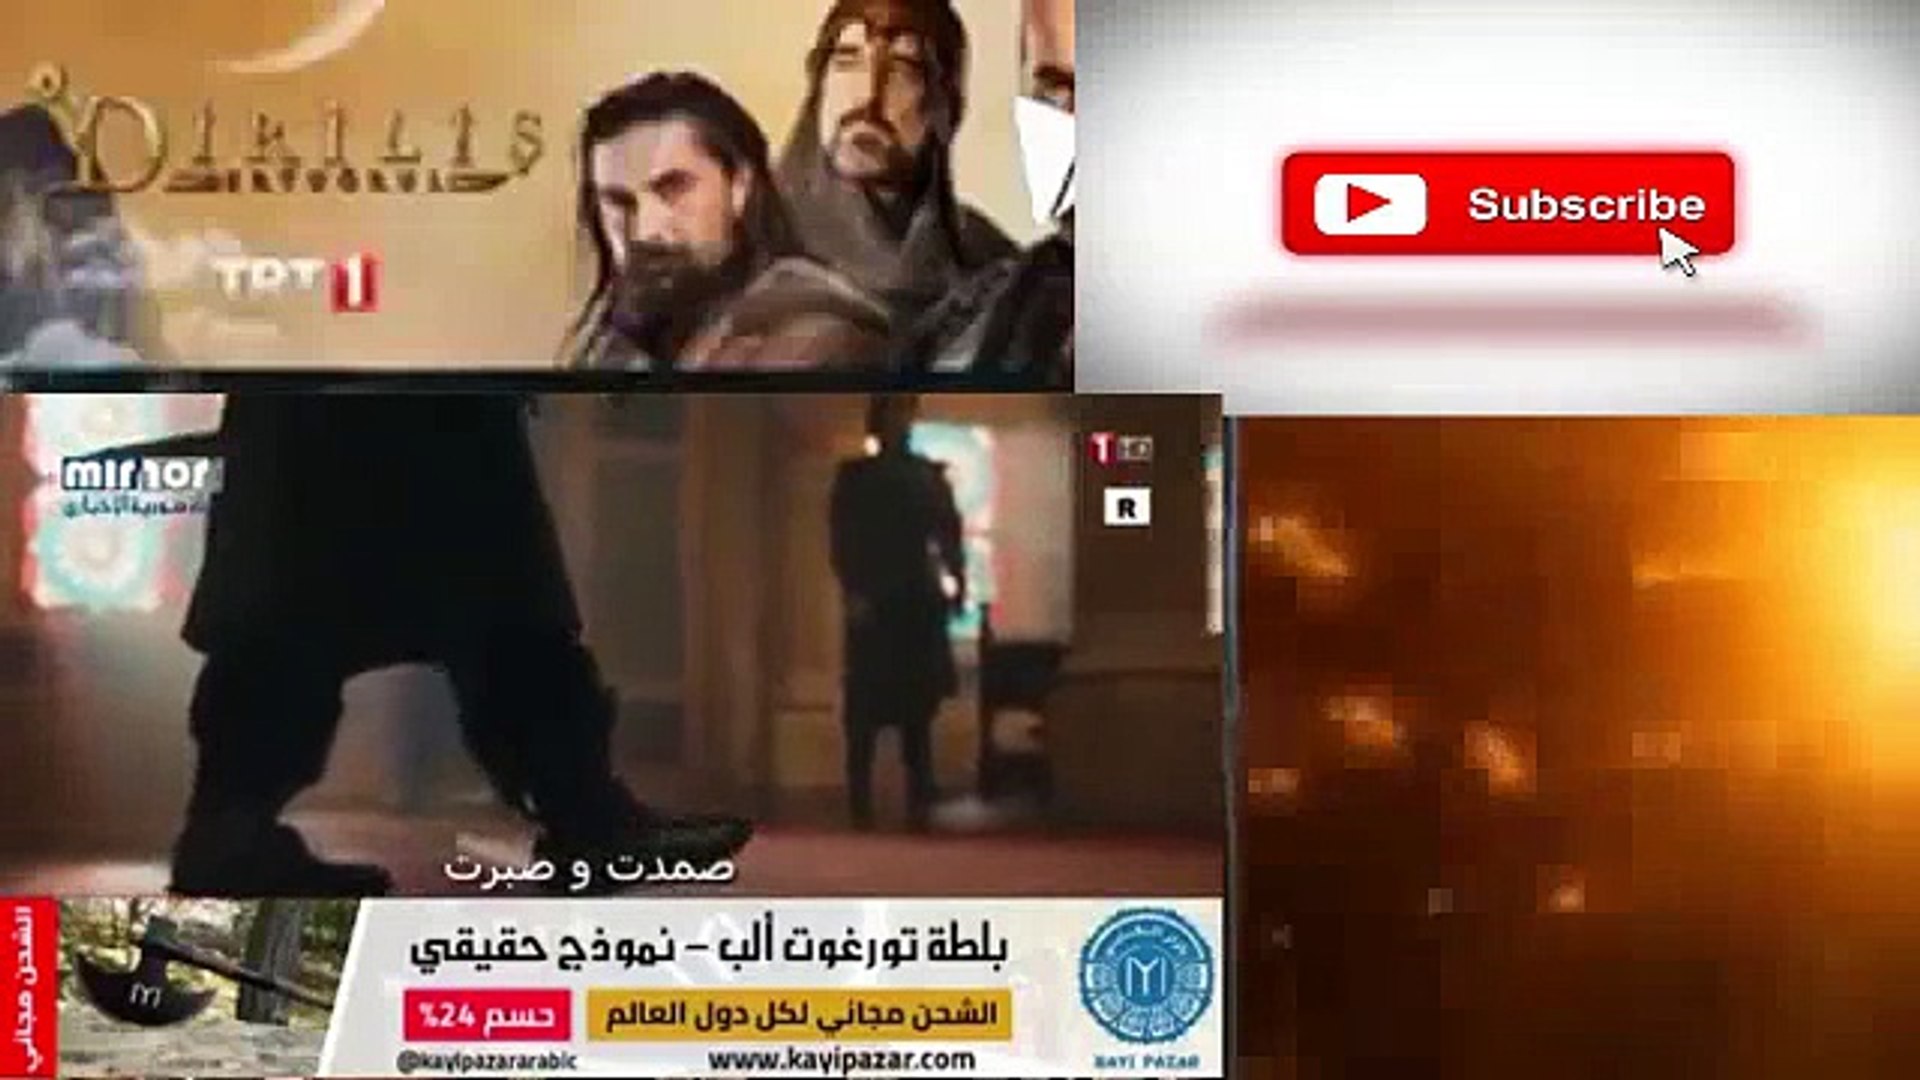 الحلقة 109 قيامة أرطغرل القسم الأول مترجم للعربية Video Dailymotion